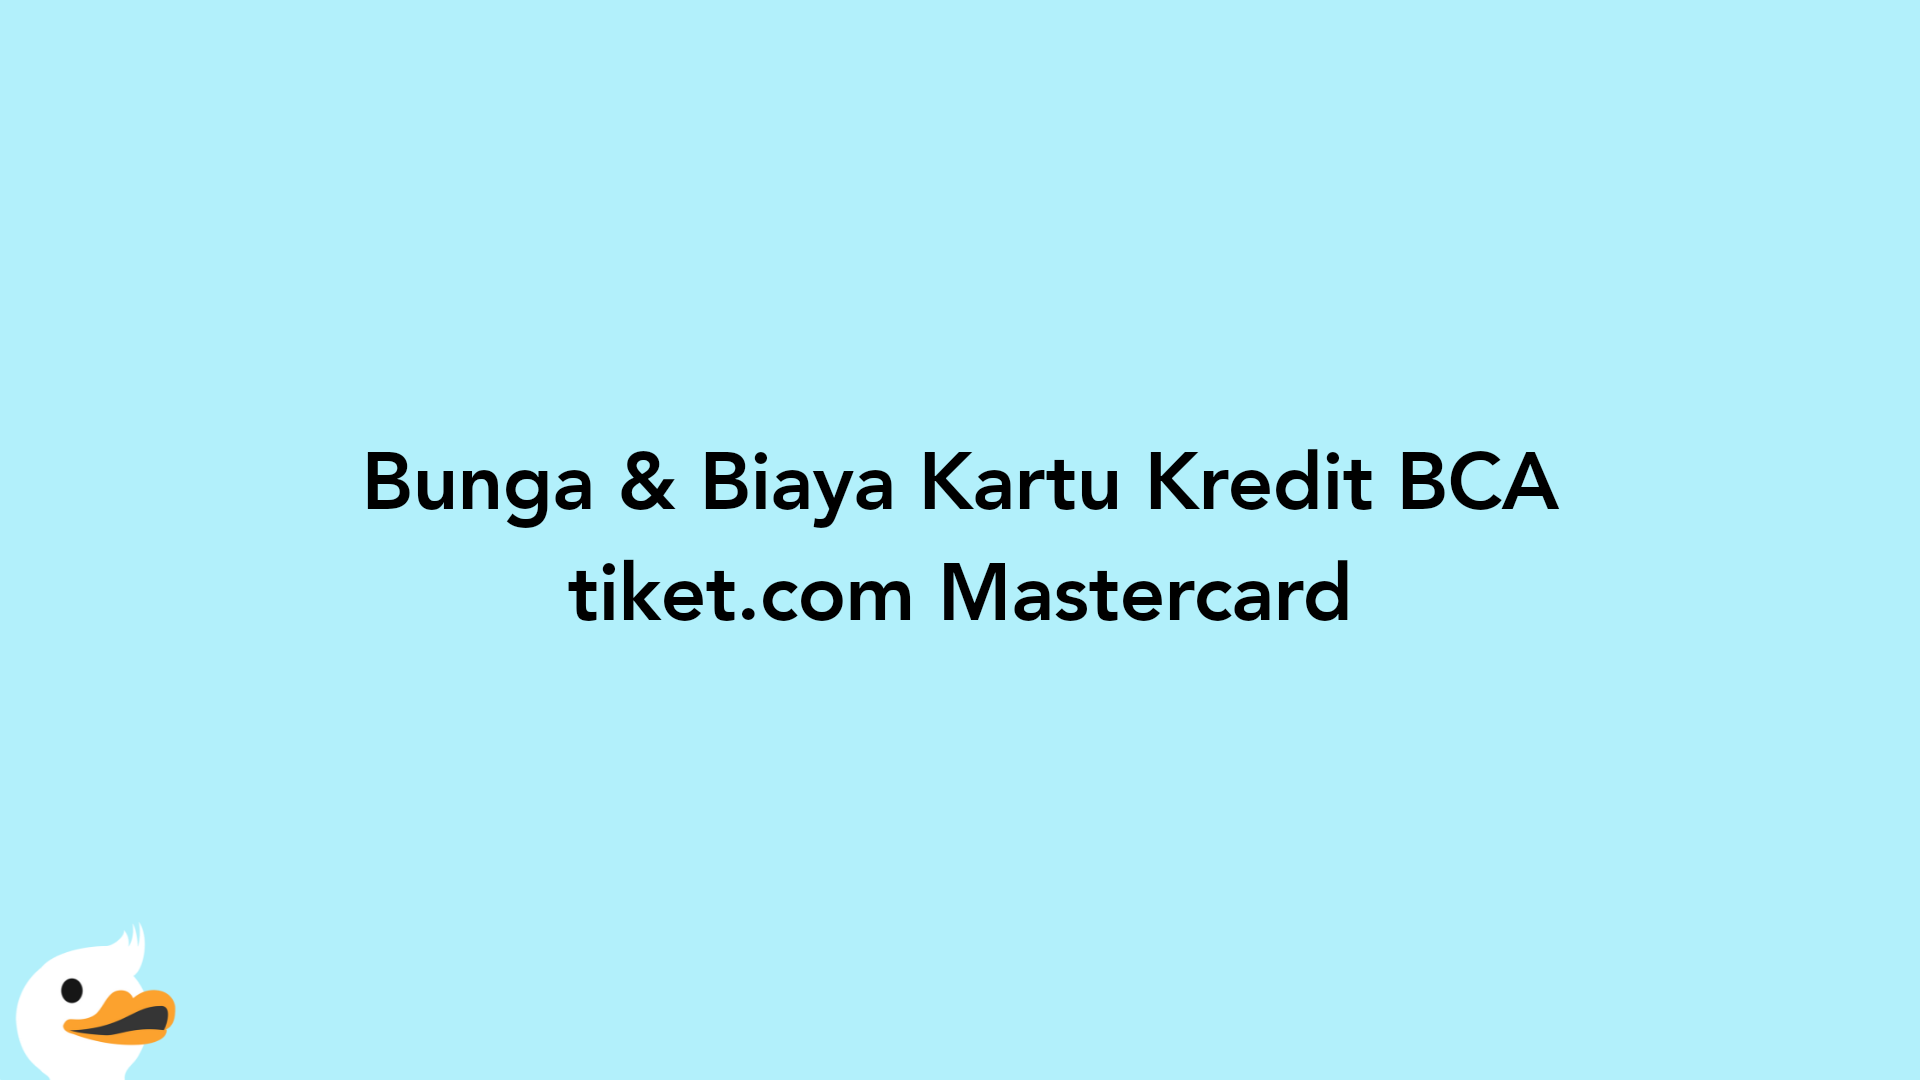 Bunga & Biaya Kartu Kredit BCA tiket.com Mastercard